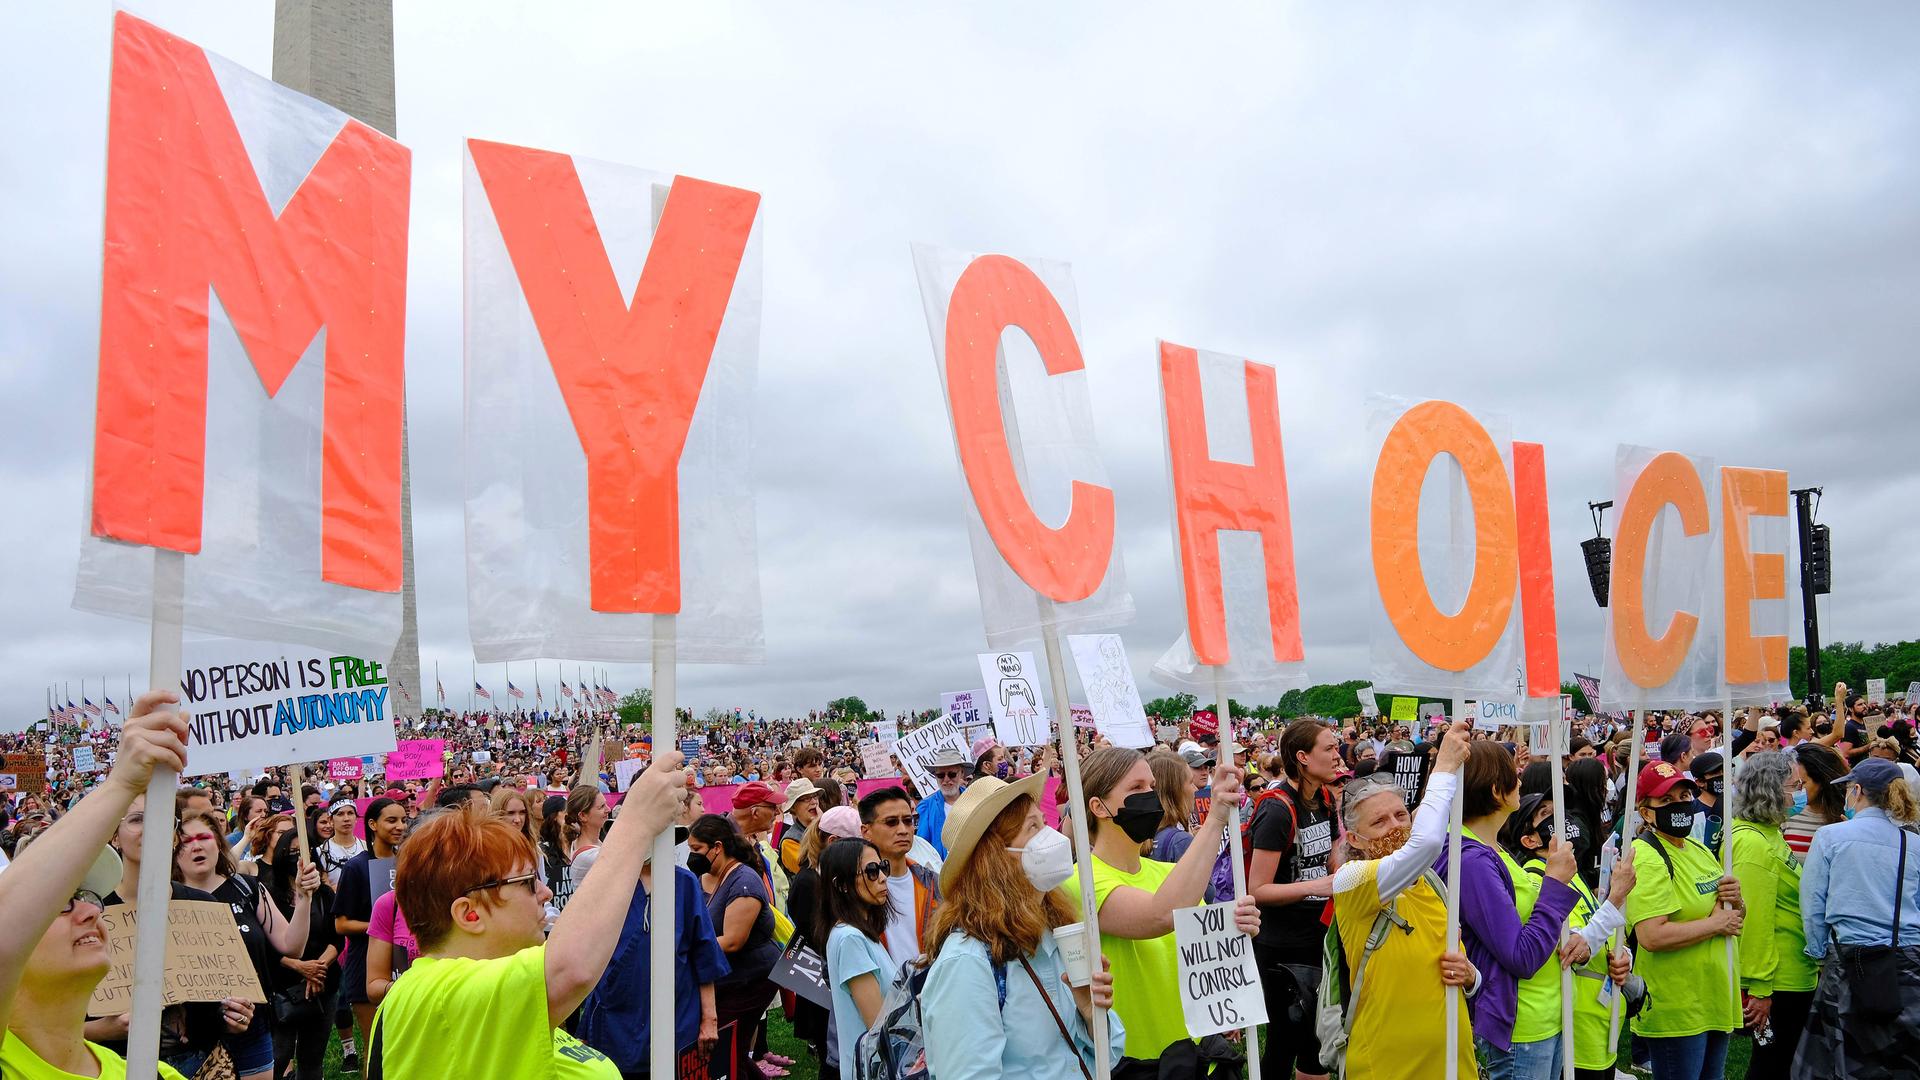 Tausende protestieren gegen das Urteil des Supreme Courts, das das Recht auf Abtreibung einschränkt. Protestierende halten Plakate mit "My Choice" (Meine Wahl) in die Luft. 